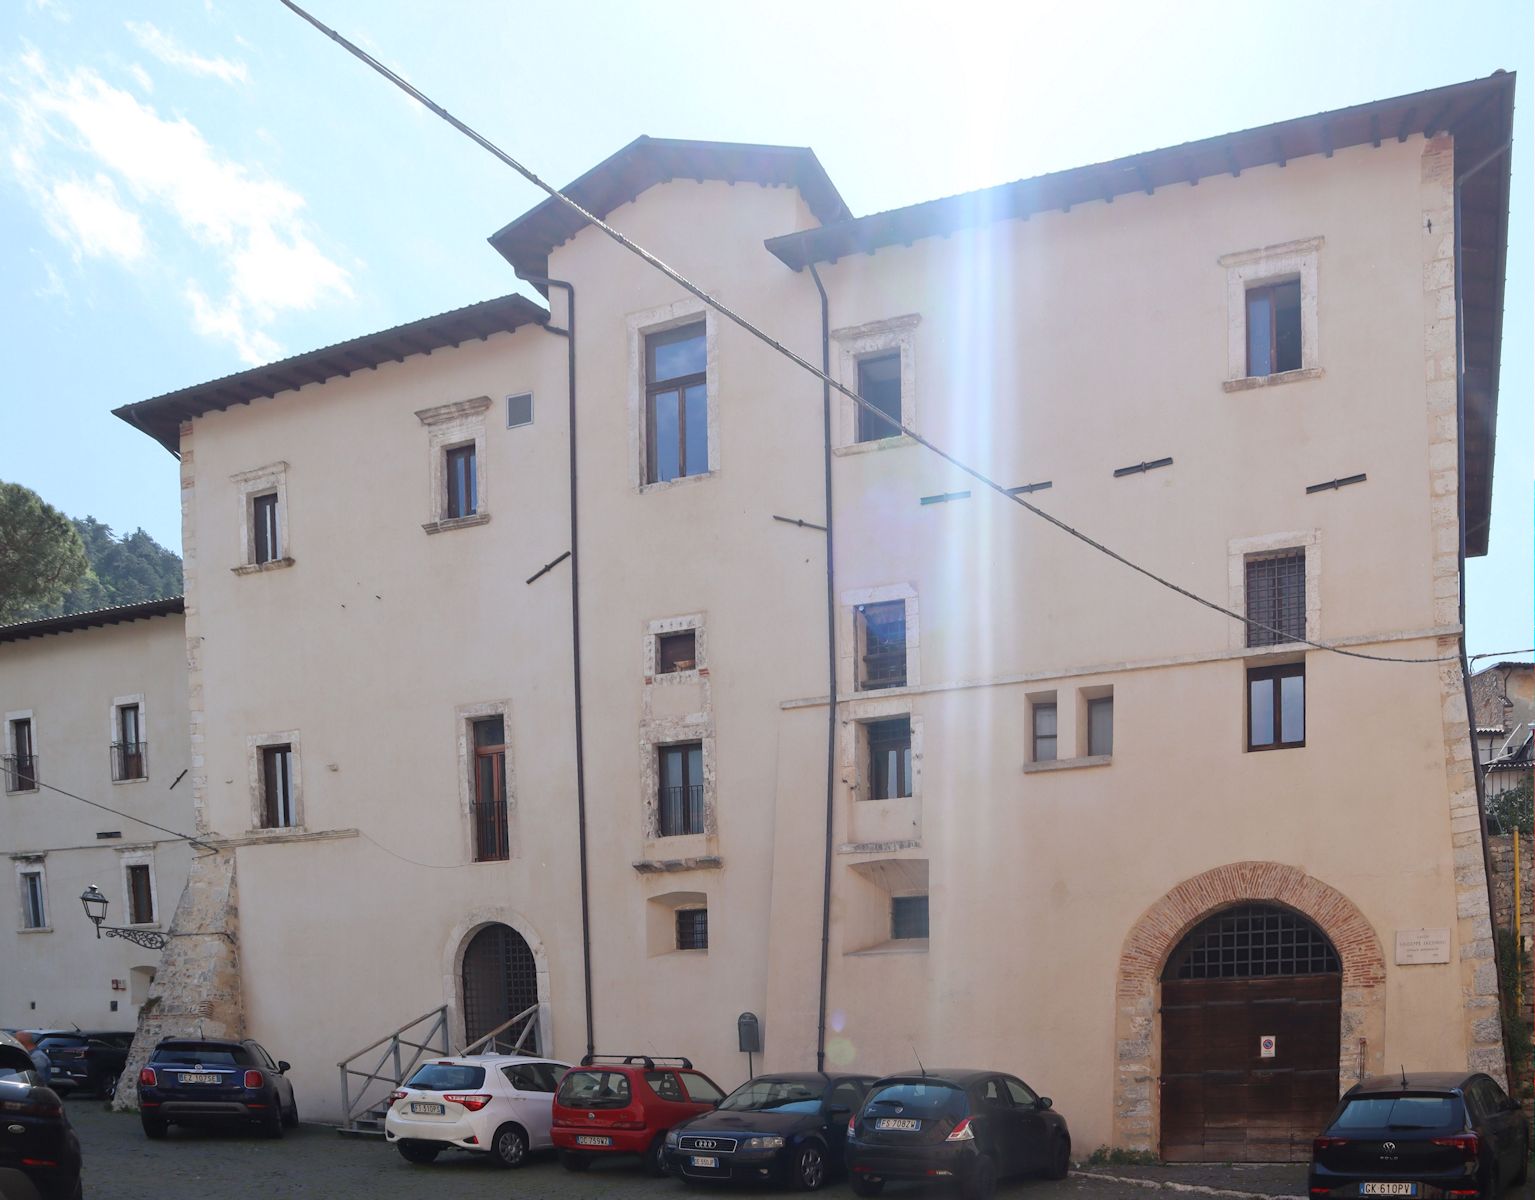 „Monumentales” Franziskanerkloster in Tagliacozzo